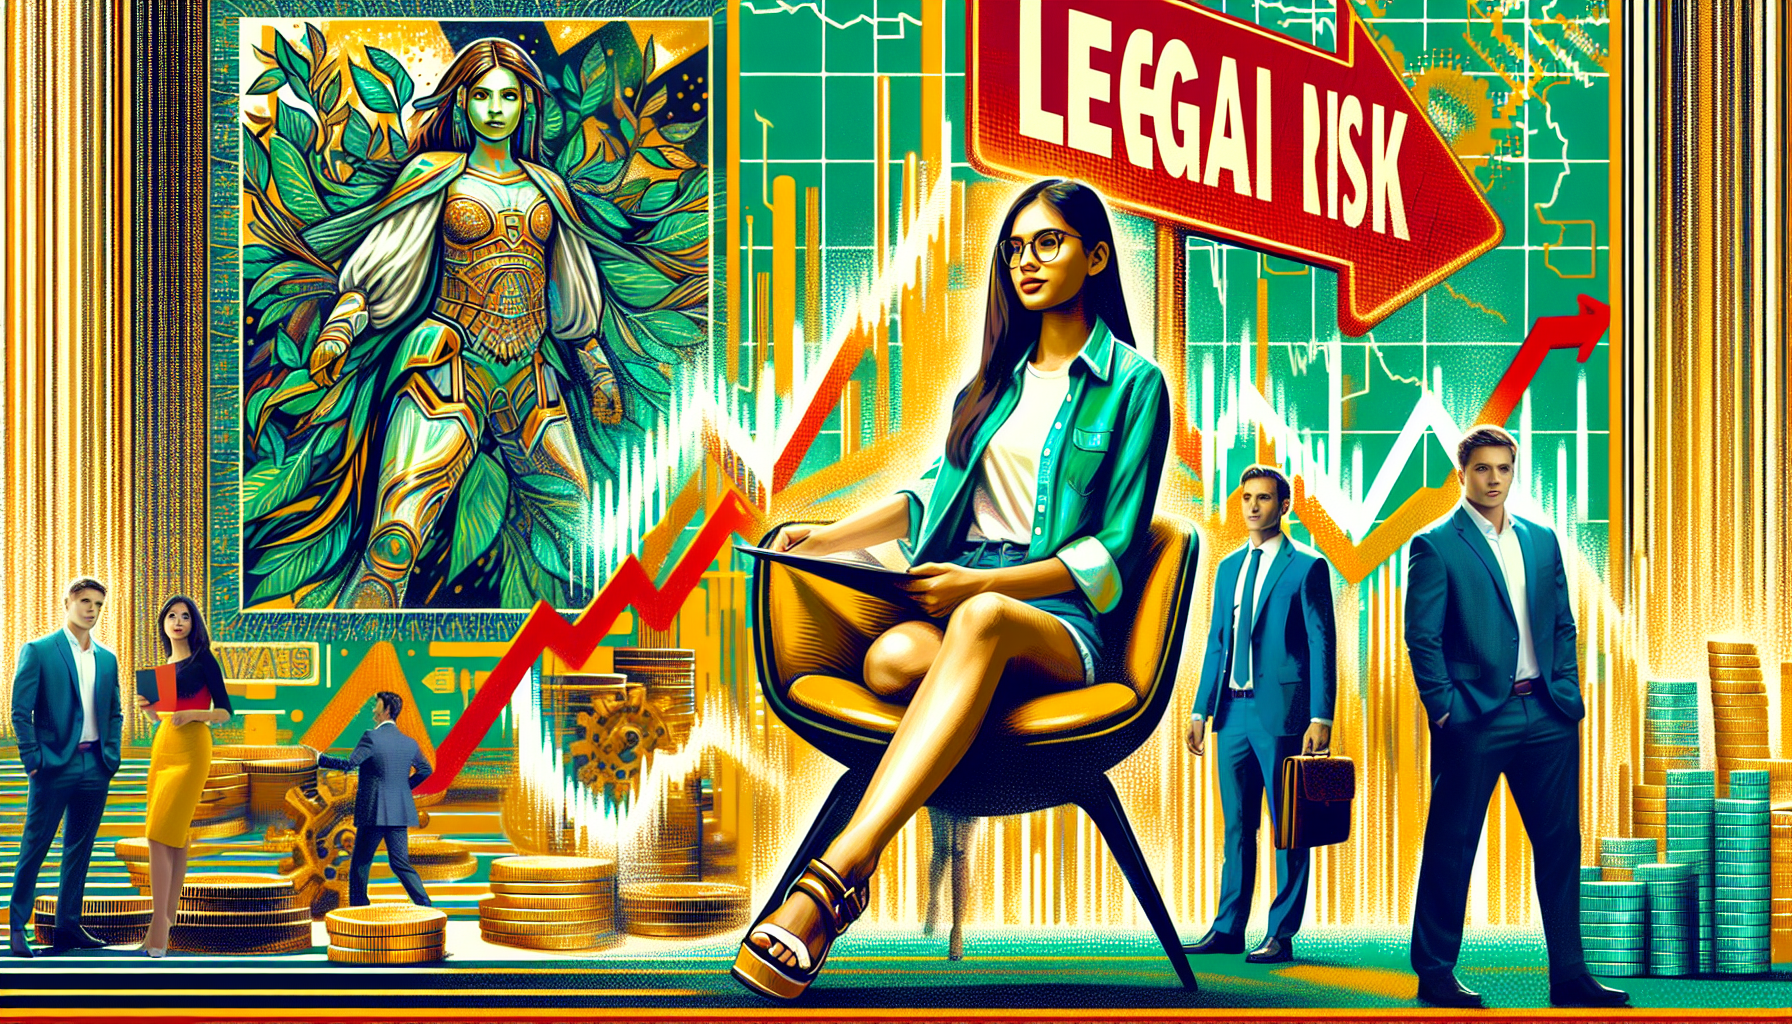 Legal Risk: Finance Explained